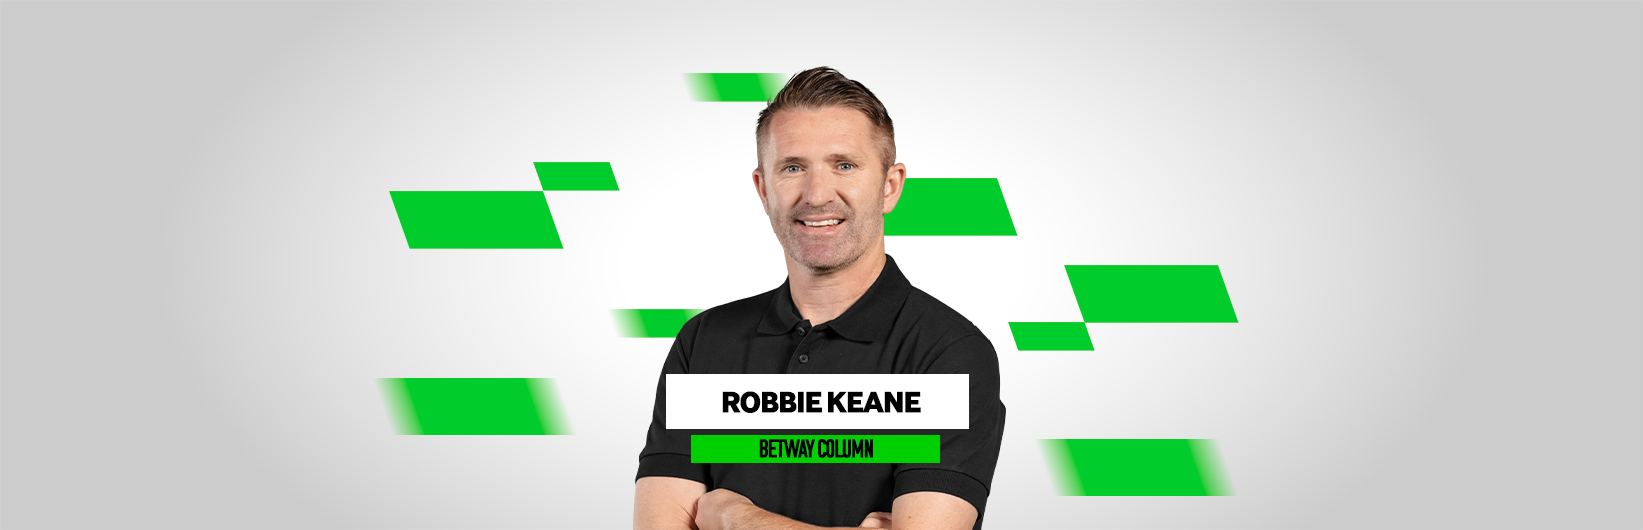 Robbie Keane: Spurs need a new striker to break into top 4